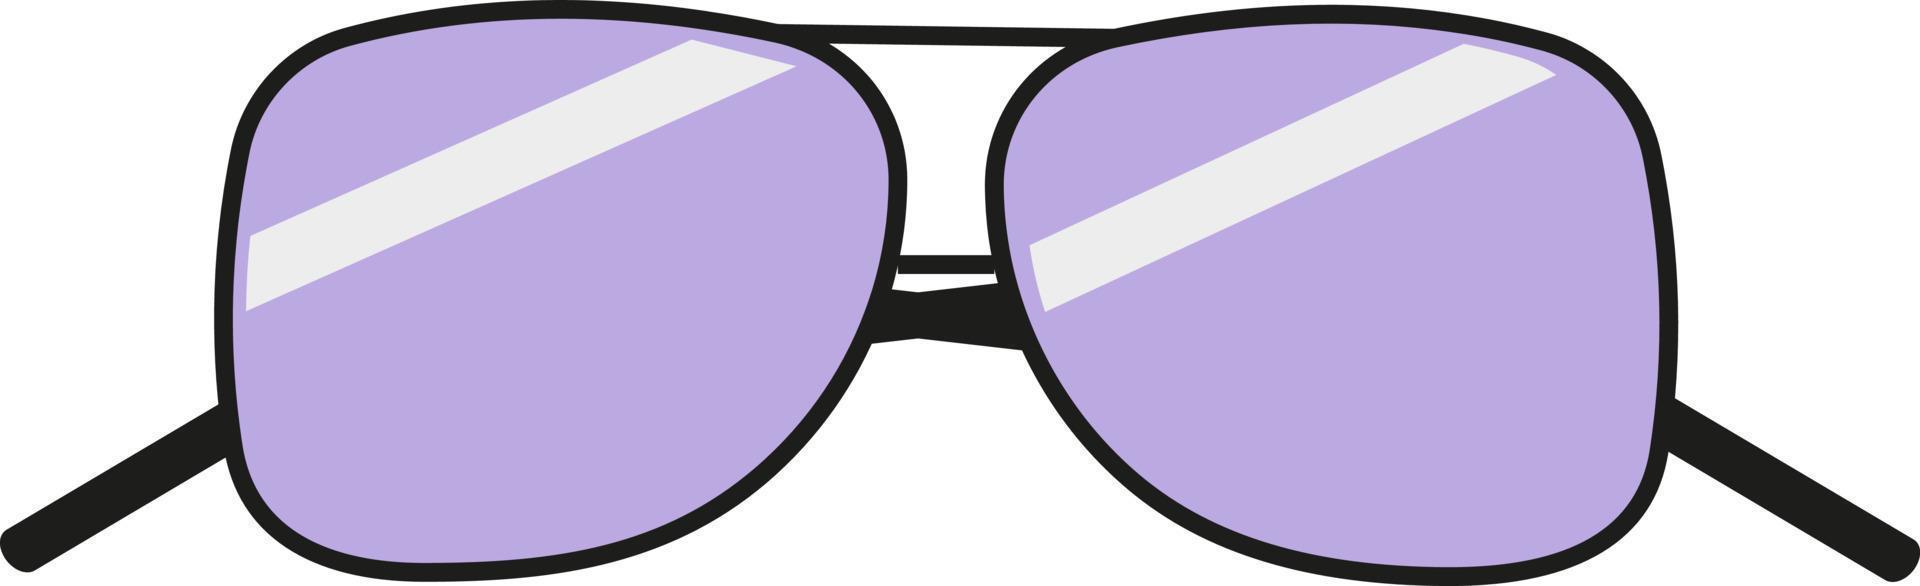 óculos de verão, ilustração, vetor em um fundo branco.